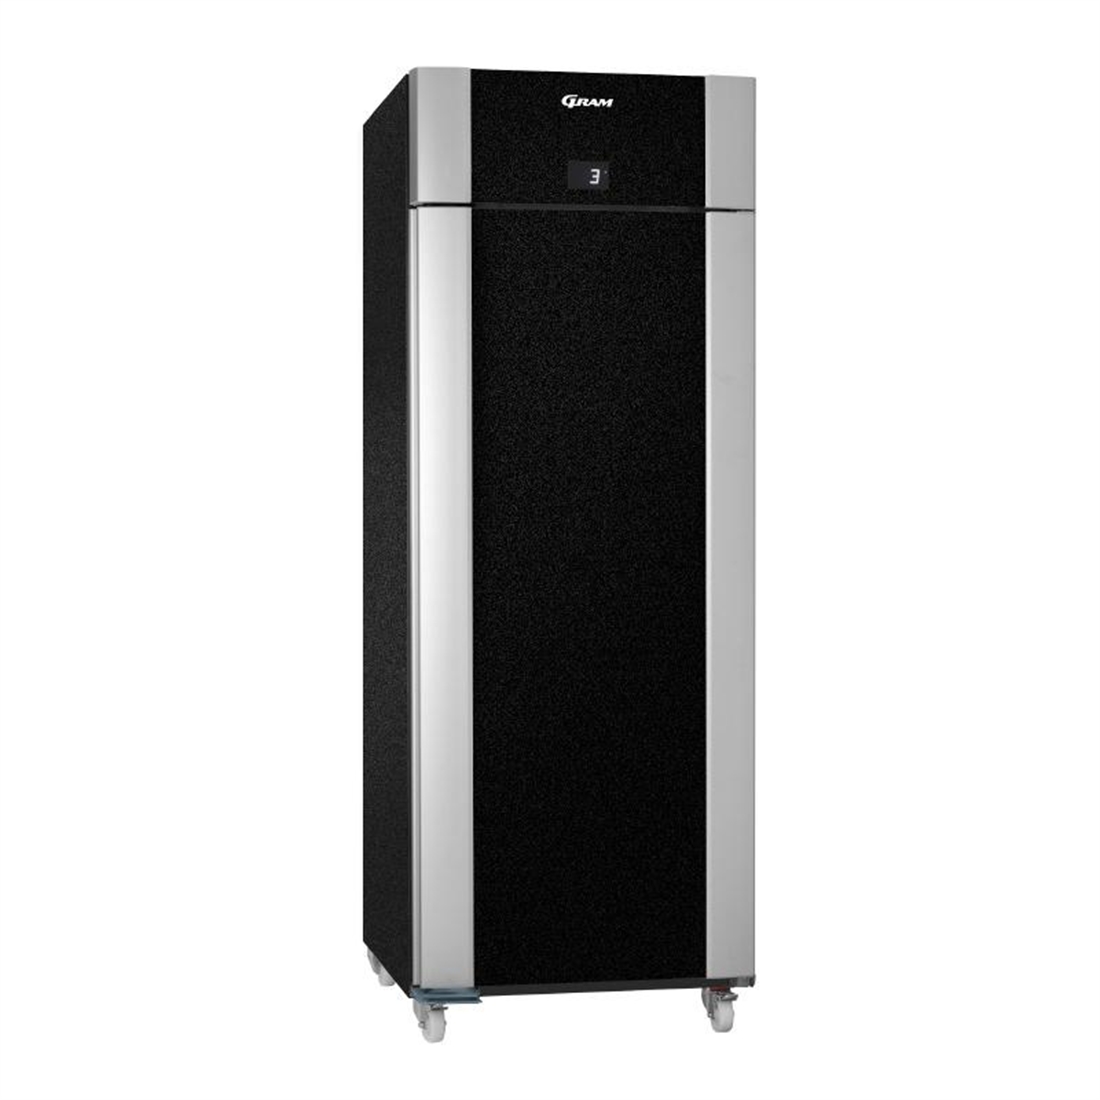 Gram Eco Twin 1 Door 601Ltr Freezer BlackF 82 BCG C1 4N